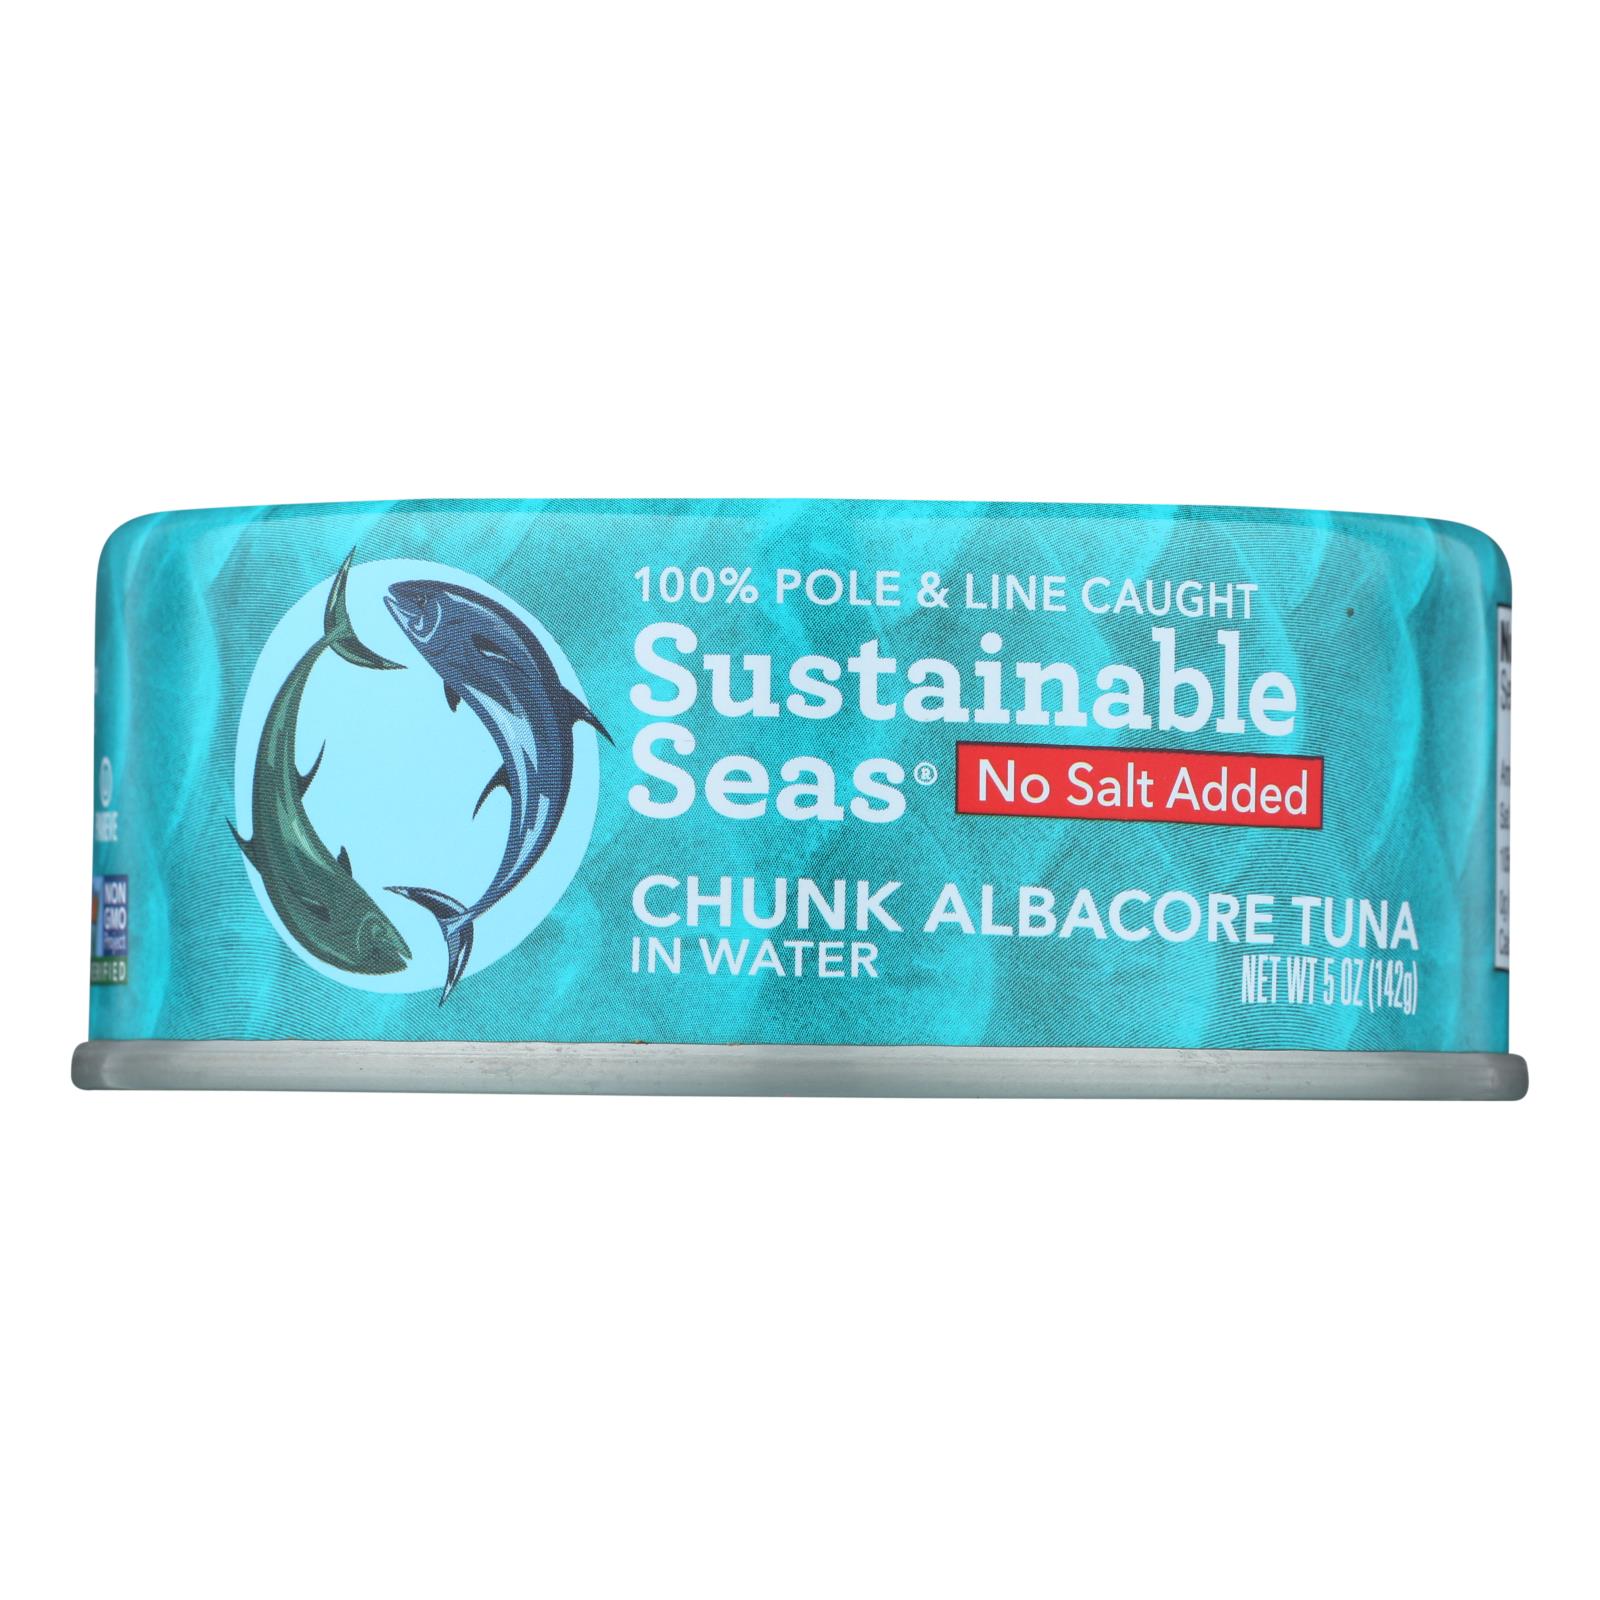 Sustainable Seas Chunk Albacore Tuna In Water - 12개 묶음상품 - 5 OZ